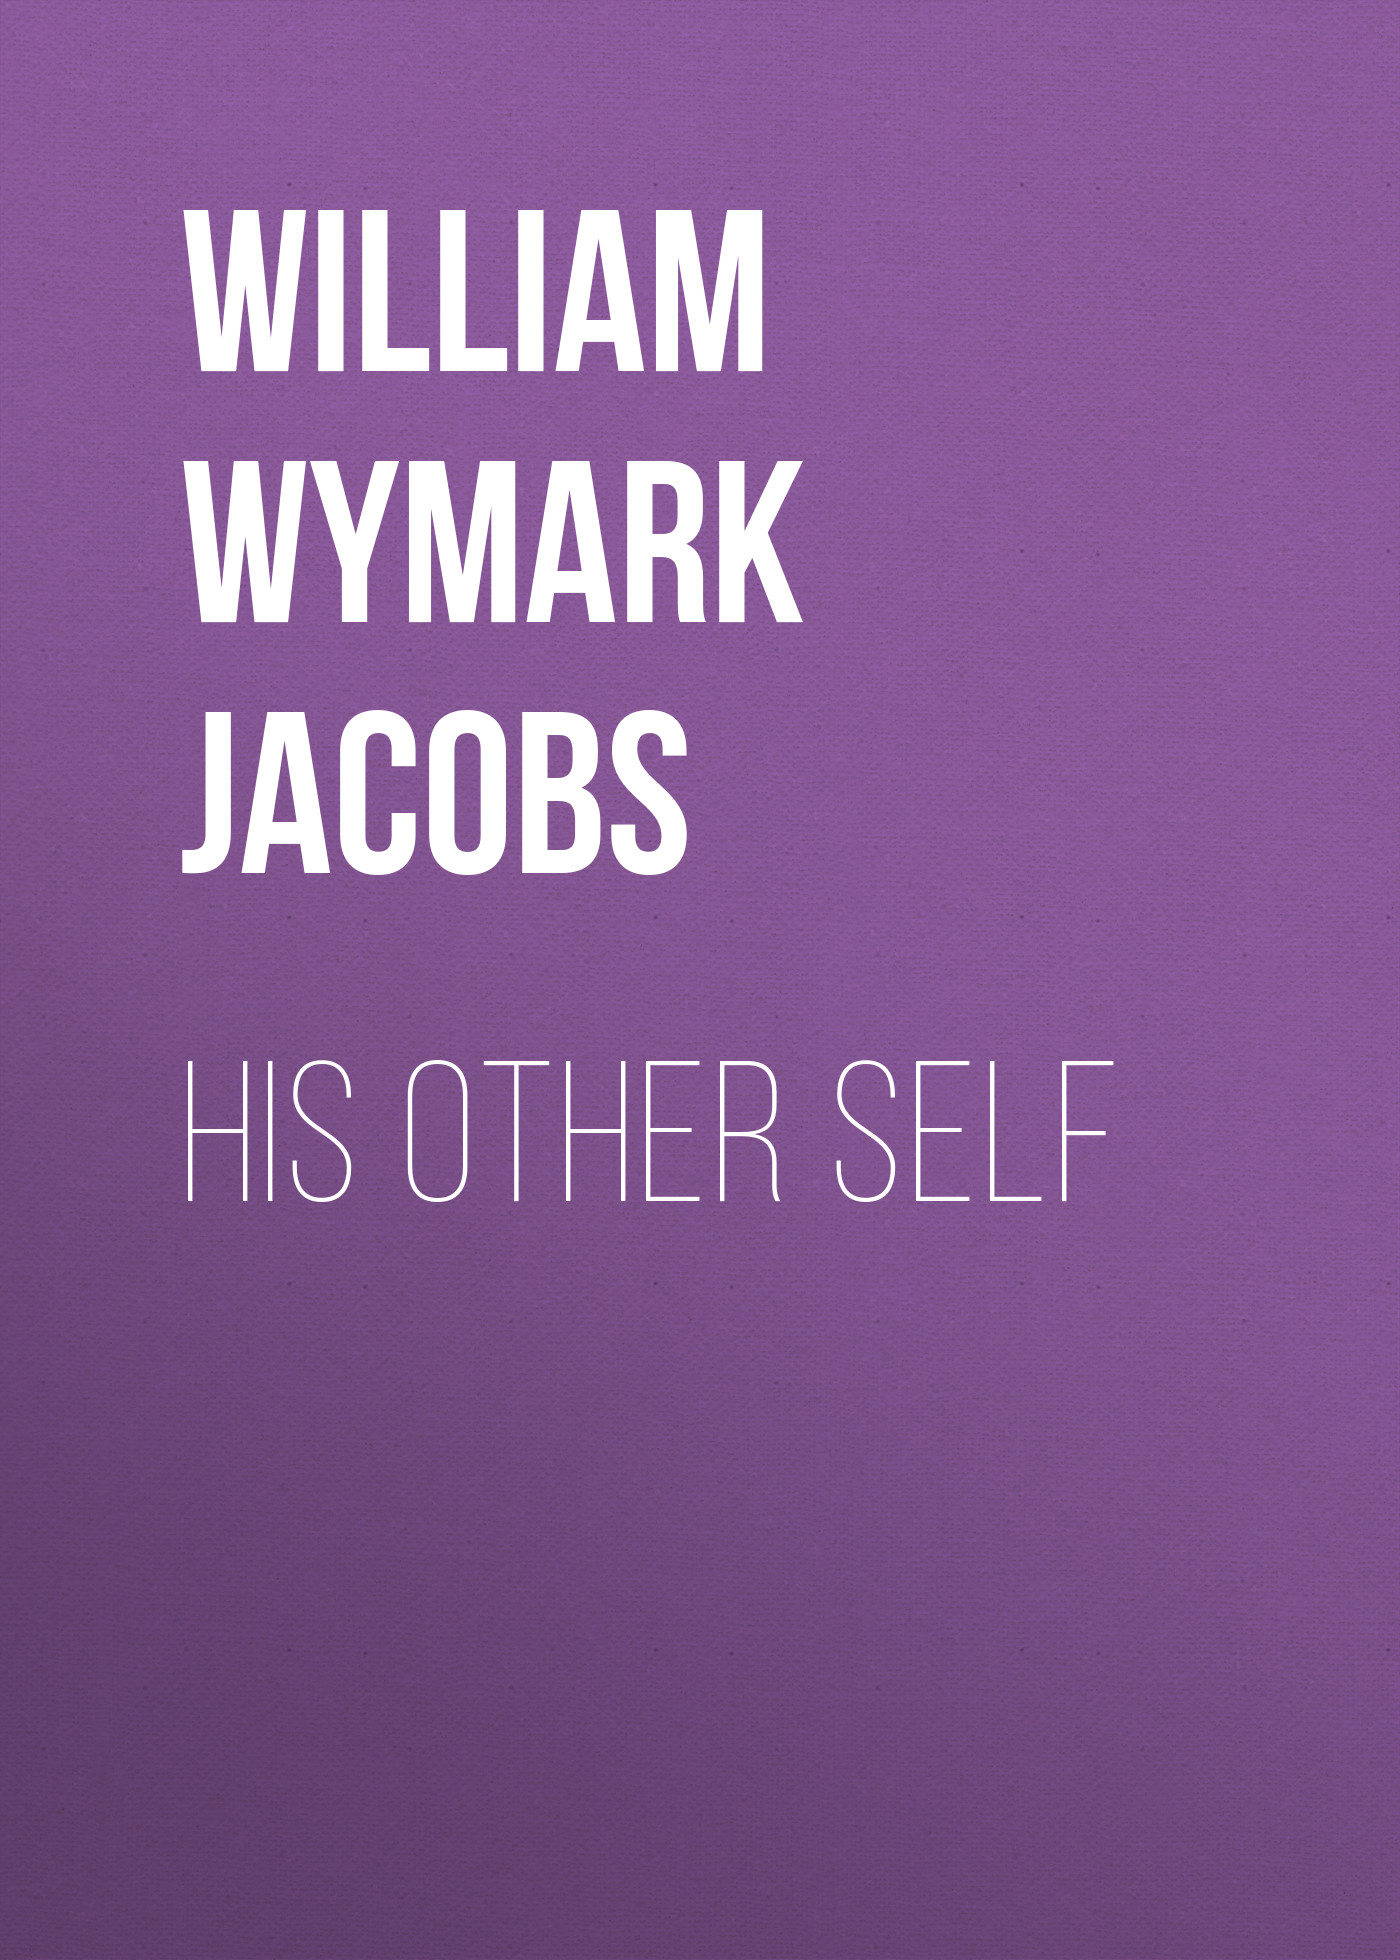 Книга His Other Self из серии , созданная William Wymark Jacobs, может относится к жанру Зарубежная классика, Зарубежная старинная литература. Стоимость электронной книги His Other Self с идентификатором 34844118 составляет 0 руб.